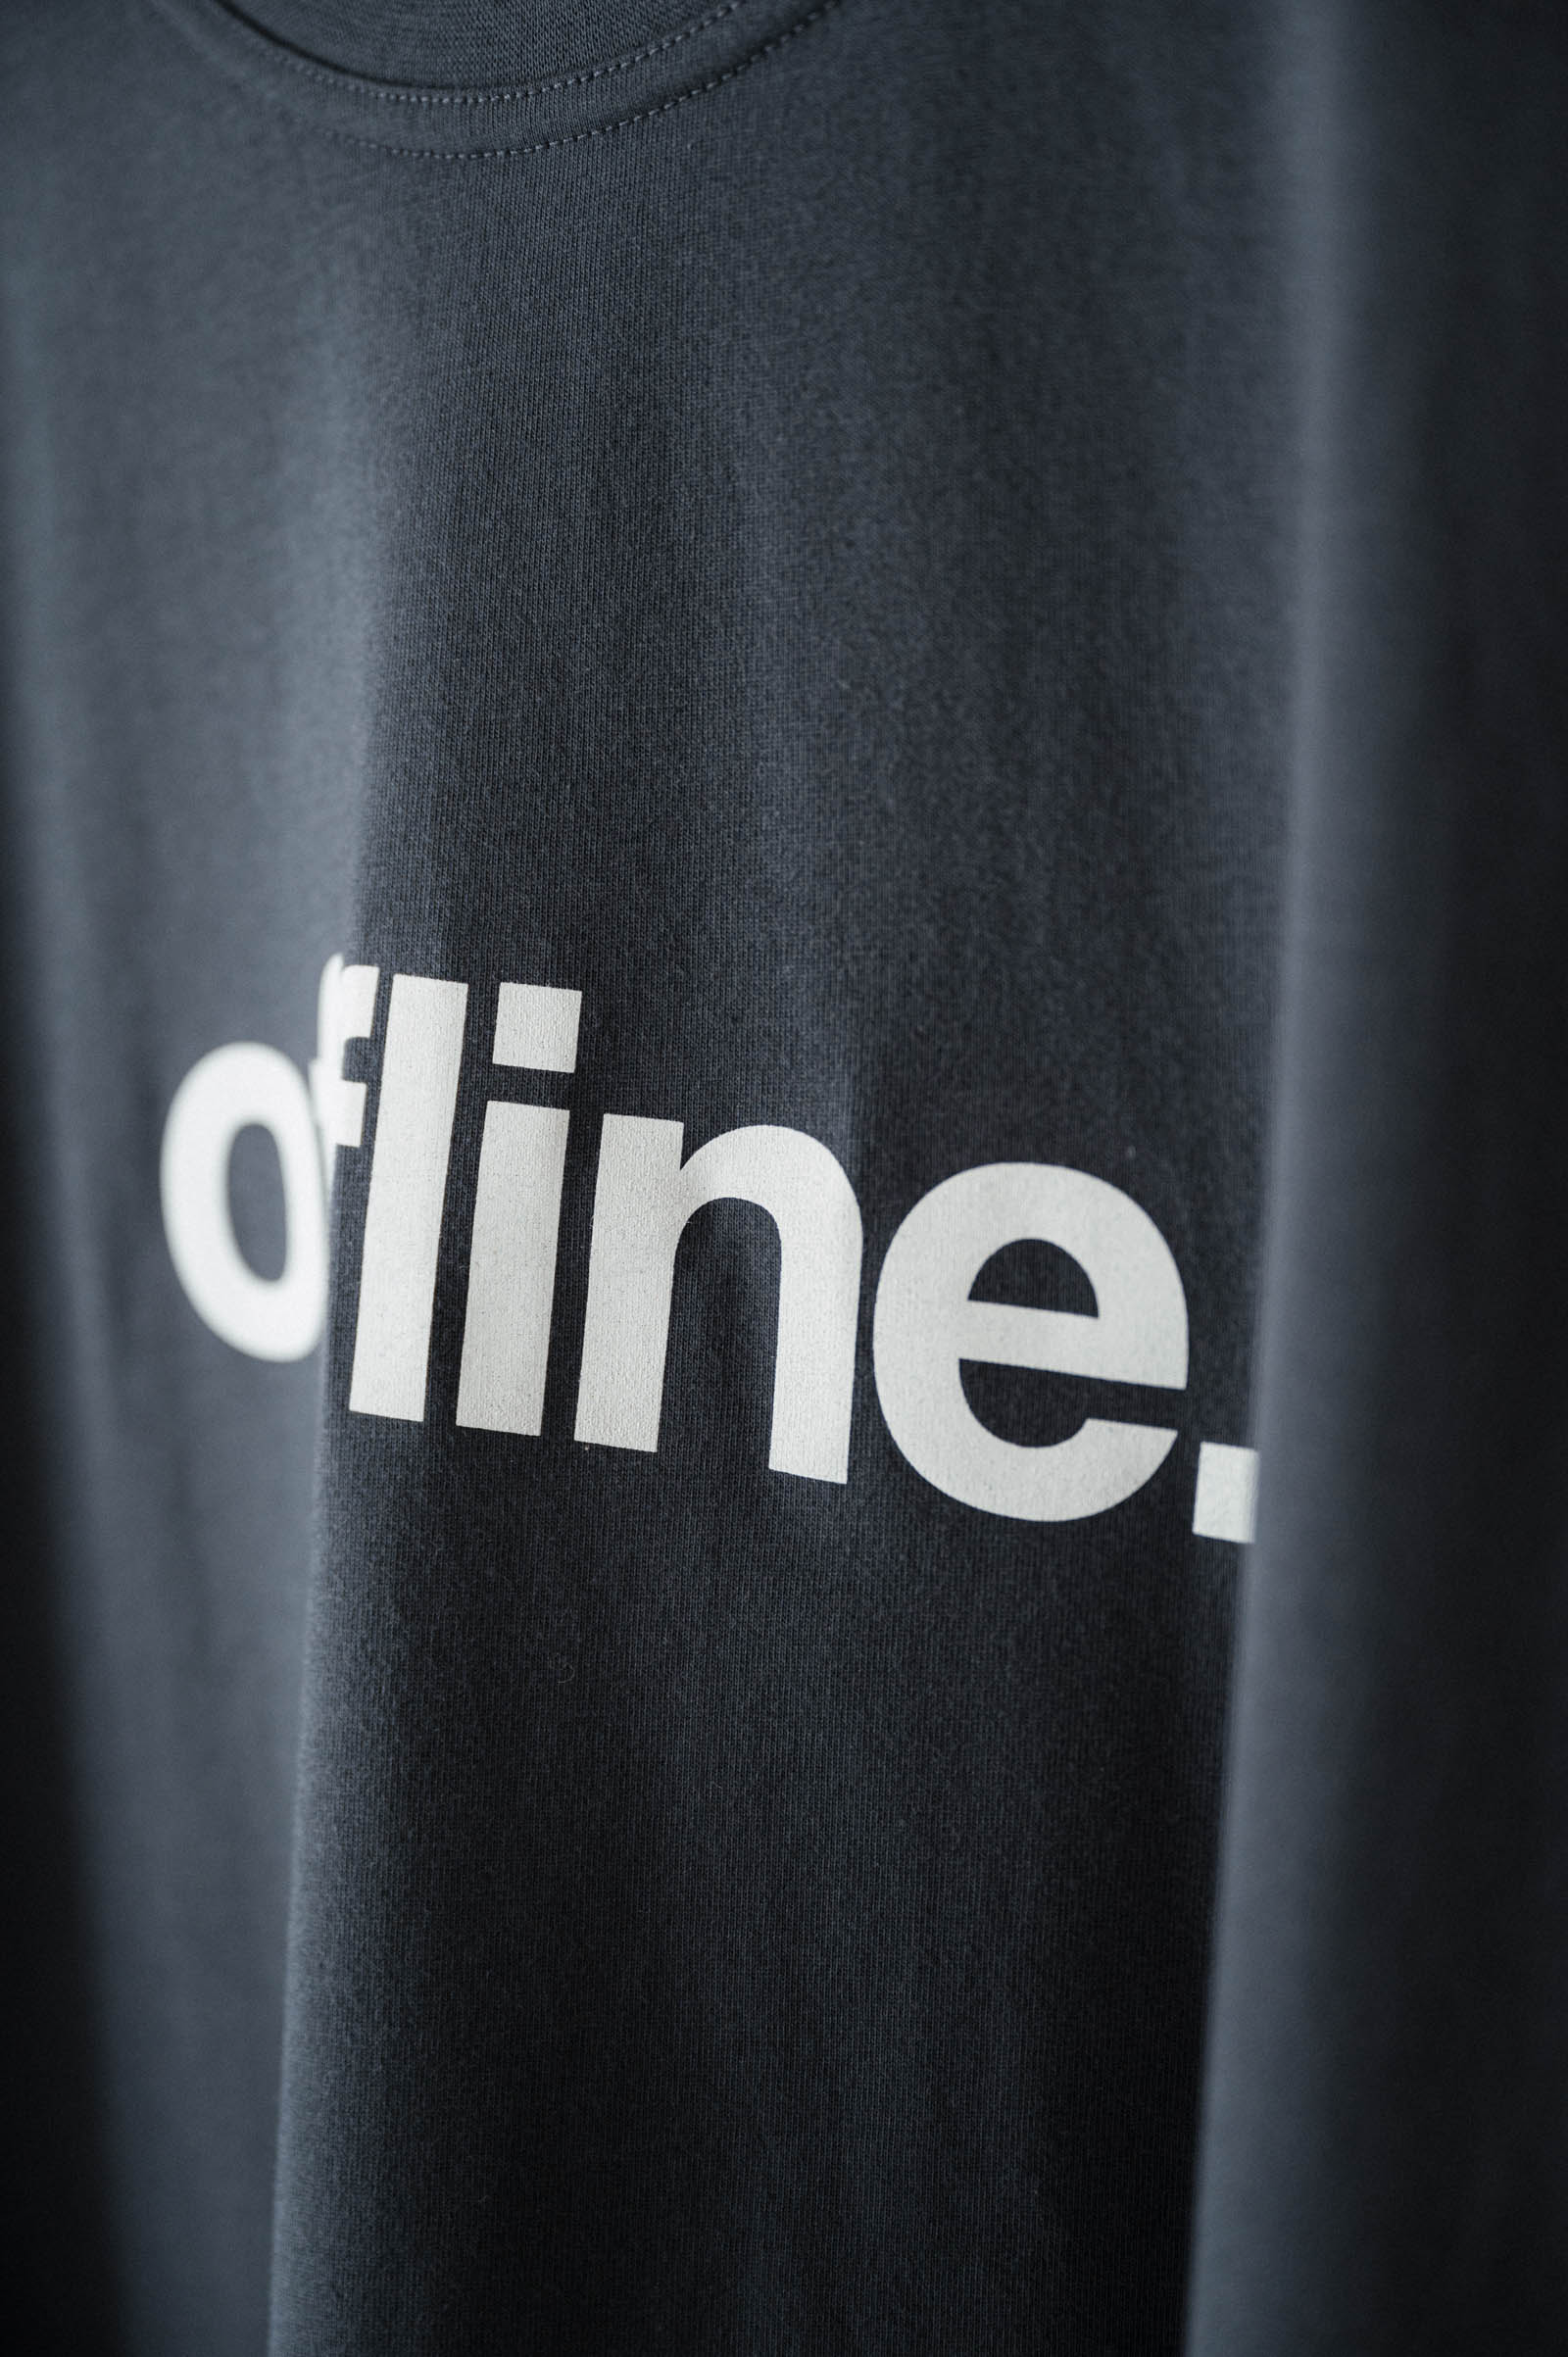 men t-shirt Offline grey